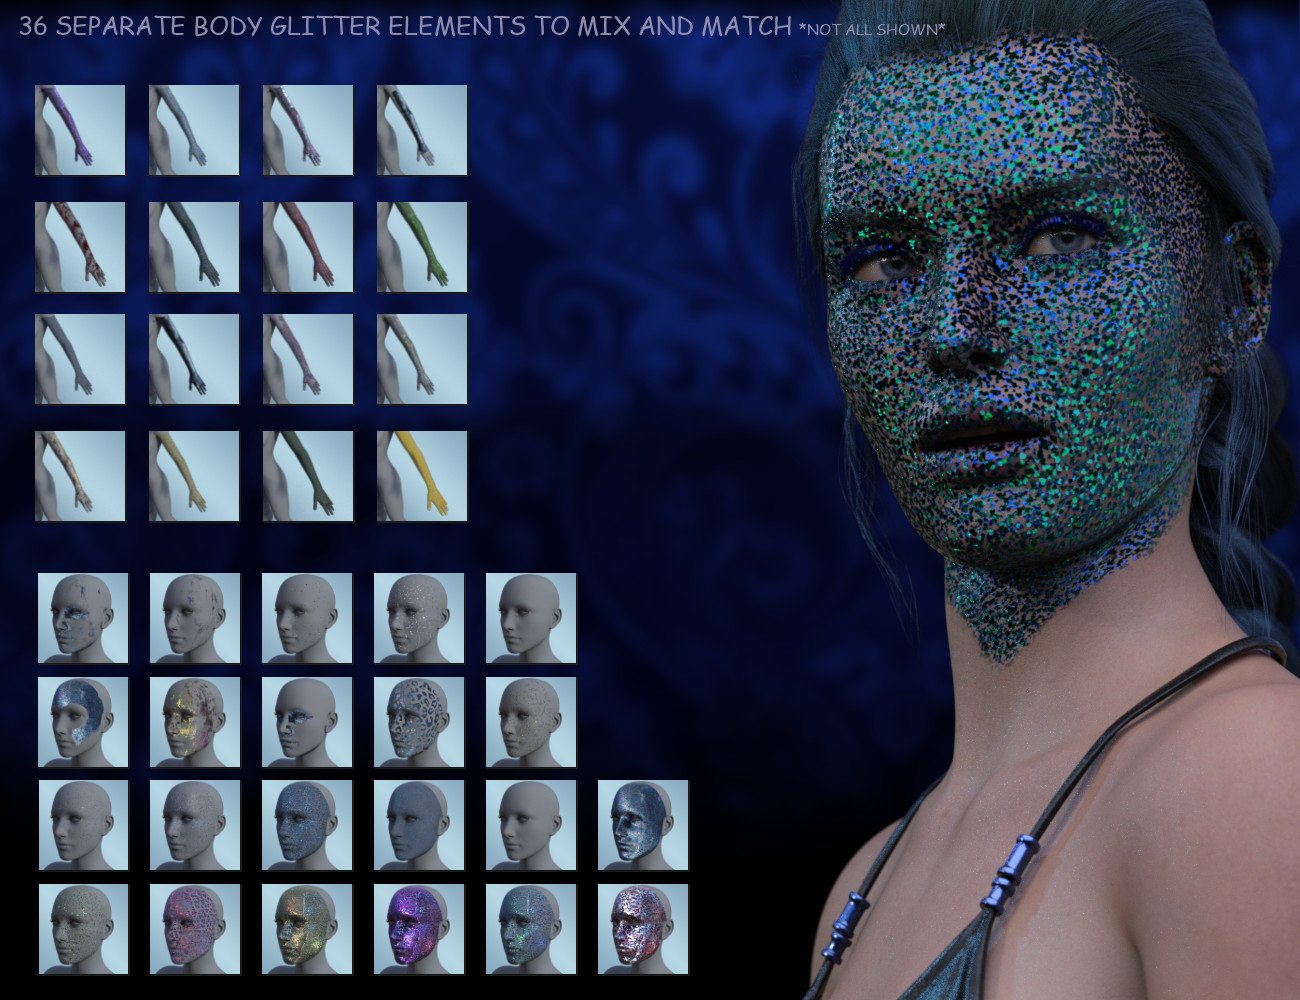 Full Body Glitter Geoshells for Genesis 8.1 Females by: ForbiddenWhispers, 3D Models by Daz 3D